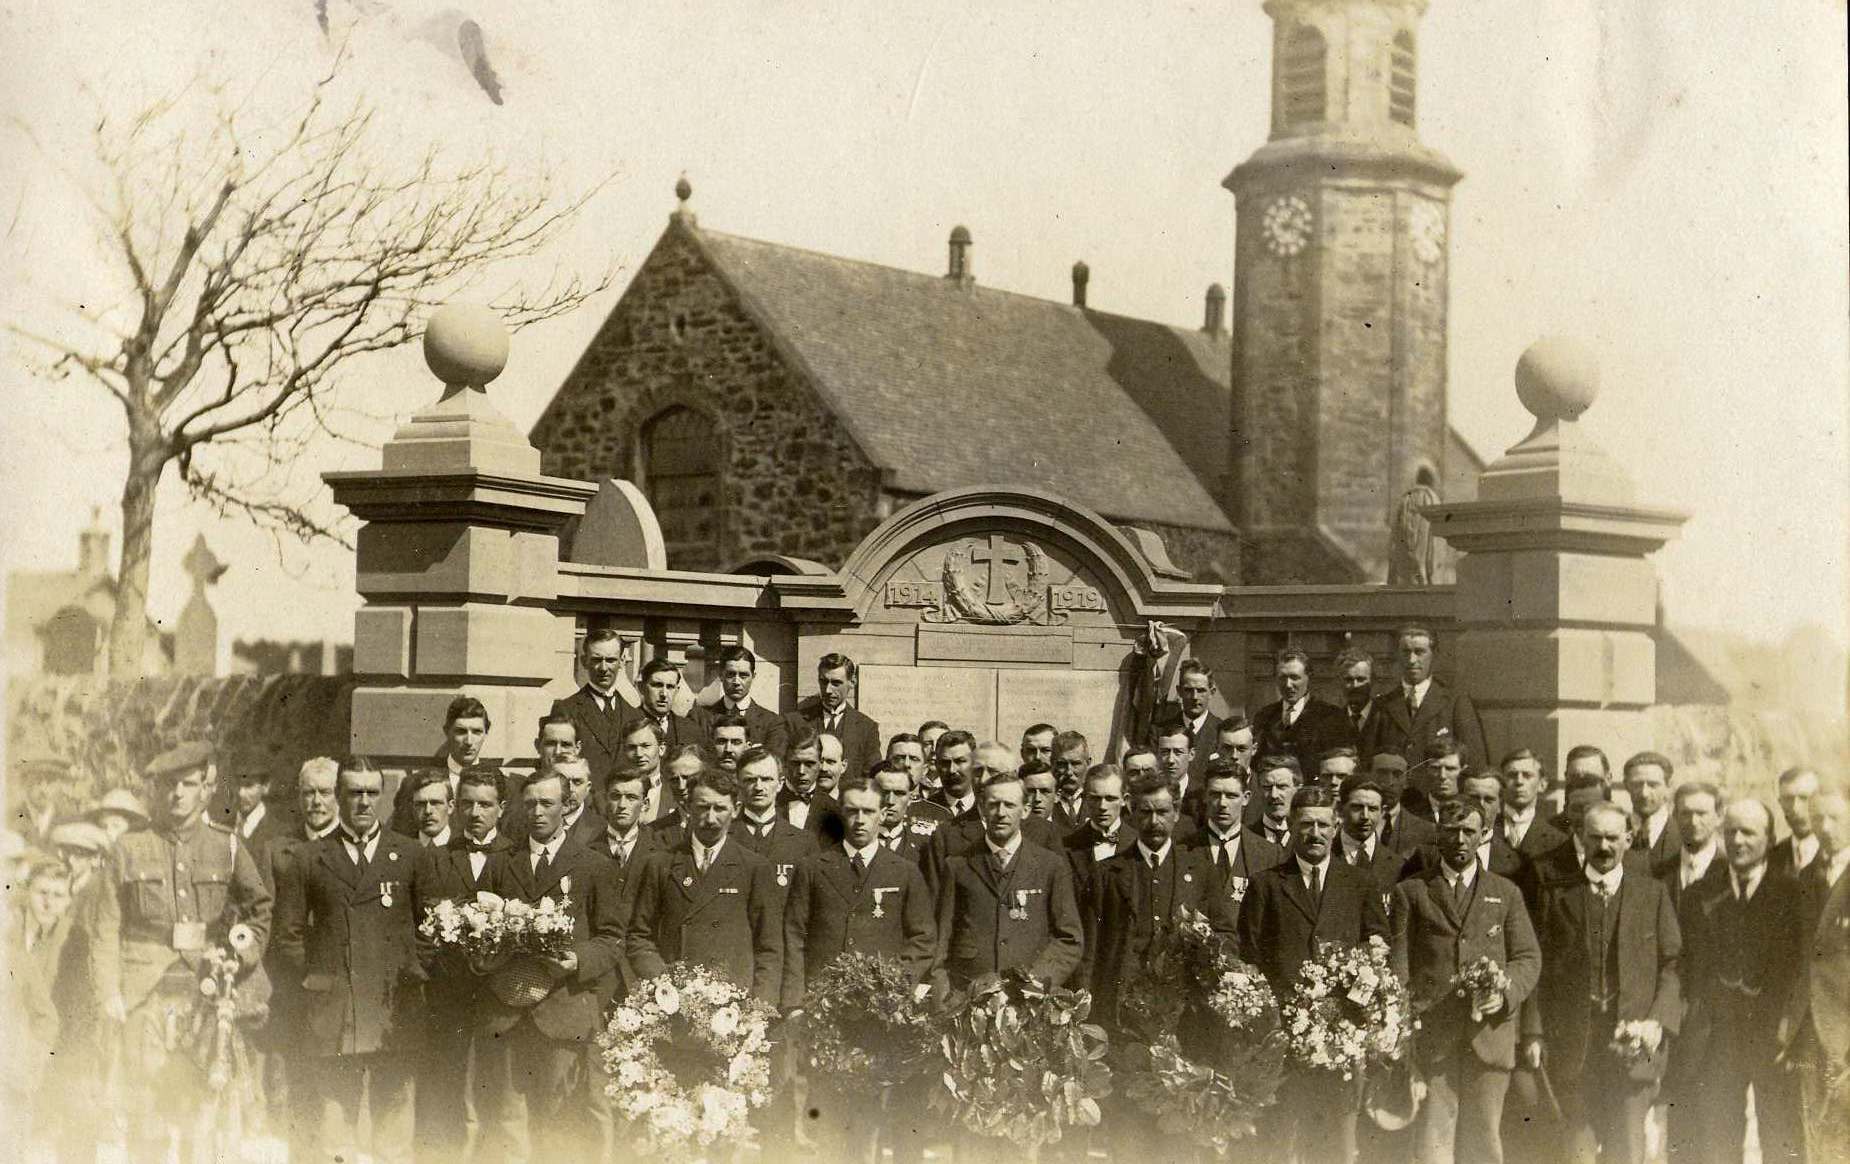 Unveilling Ceremony 24 April 1921